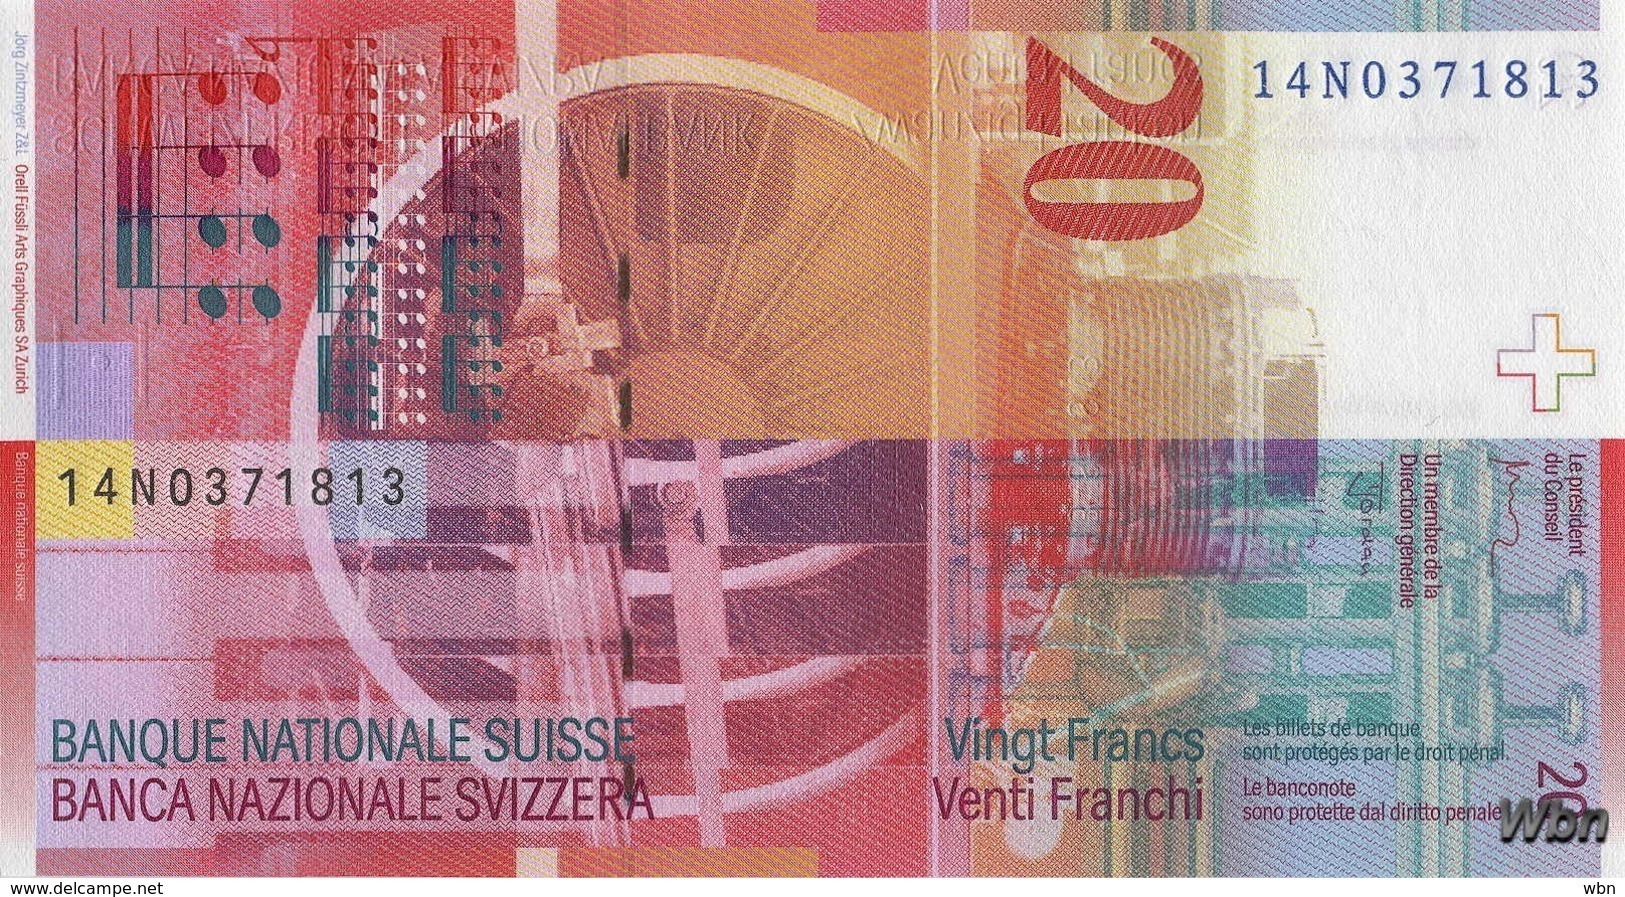 Suisse 20 Francs (P69h) 2014 (Pref: N) -UNC- - Svizzera